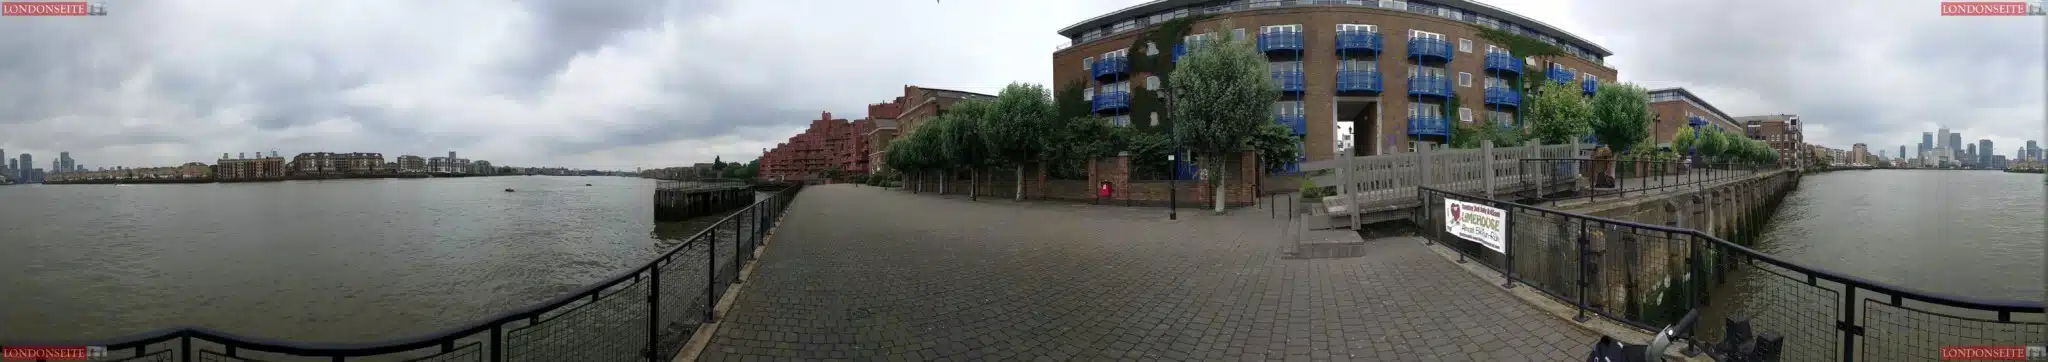 VR Bilder von London